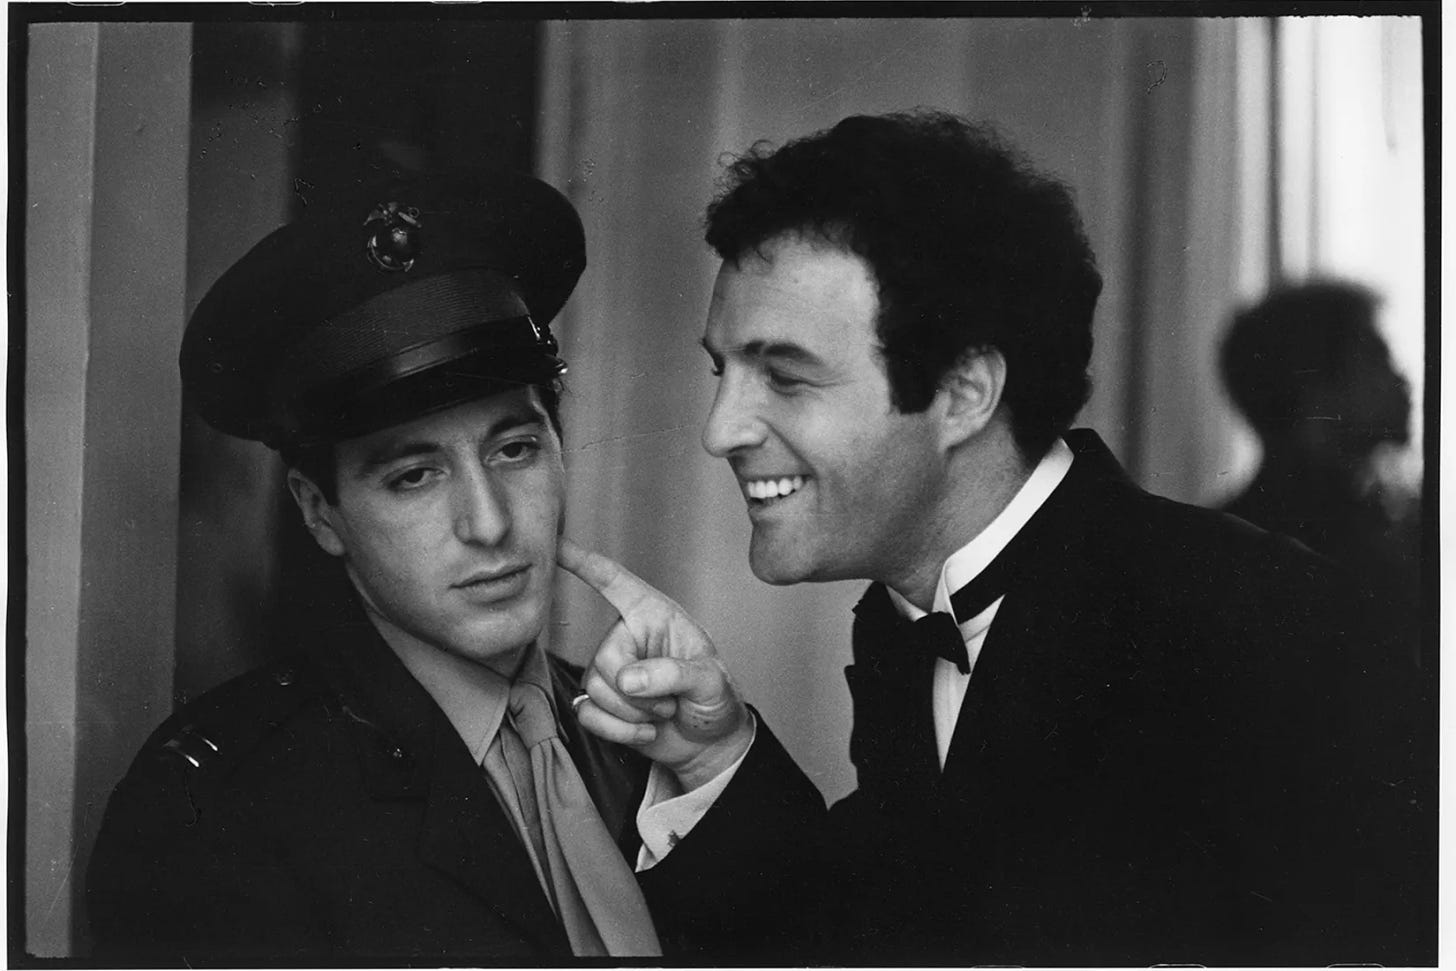 Sonny Corleone apontando o dedo para a bochecha de Michael Corleone de um jeito debochado, enquanto ele faz cara de irritado